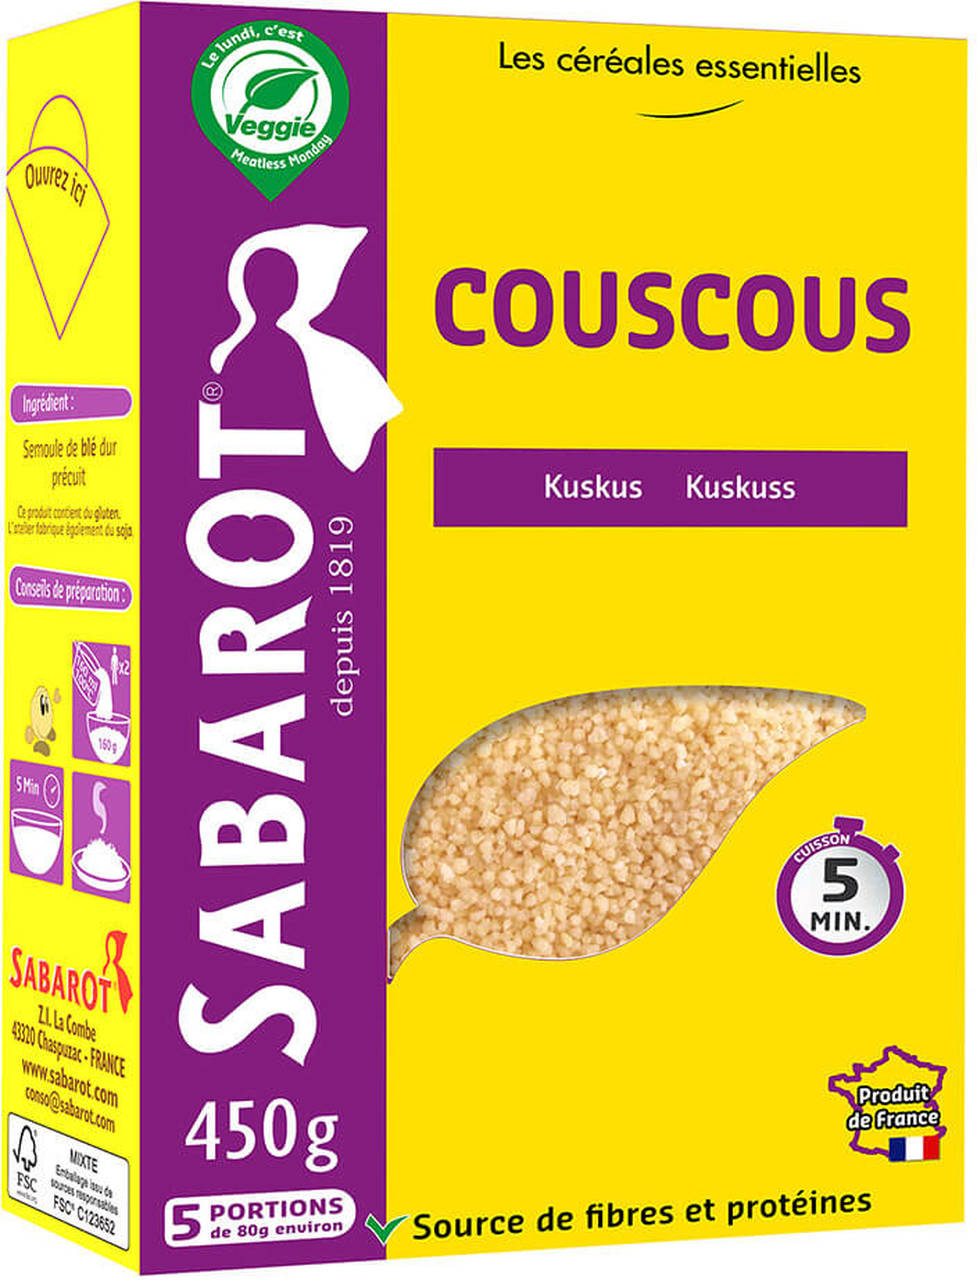 Couscous - Sabarot